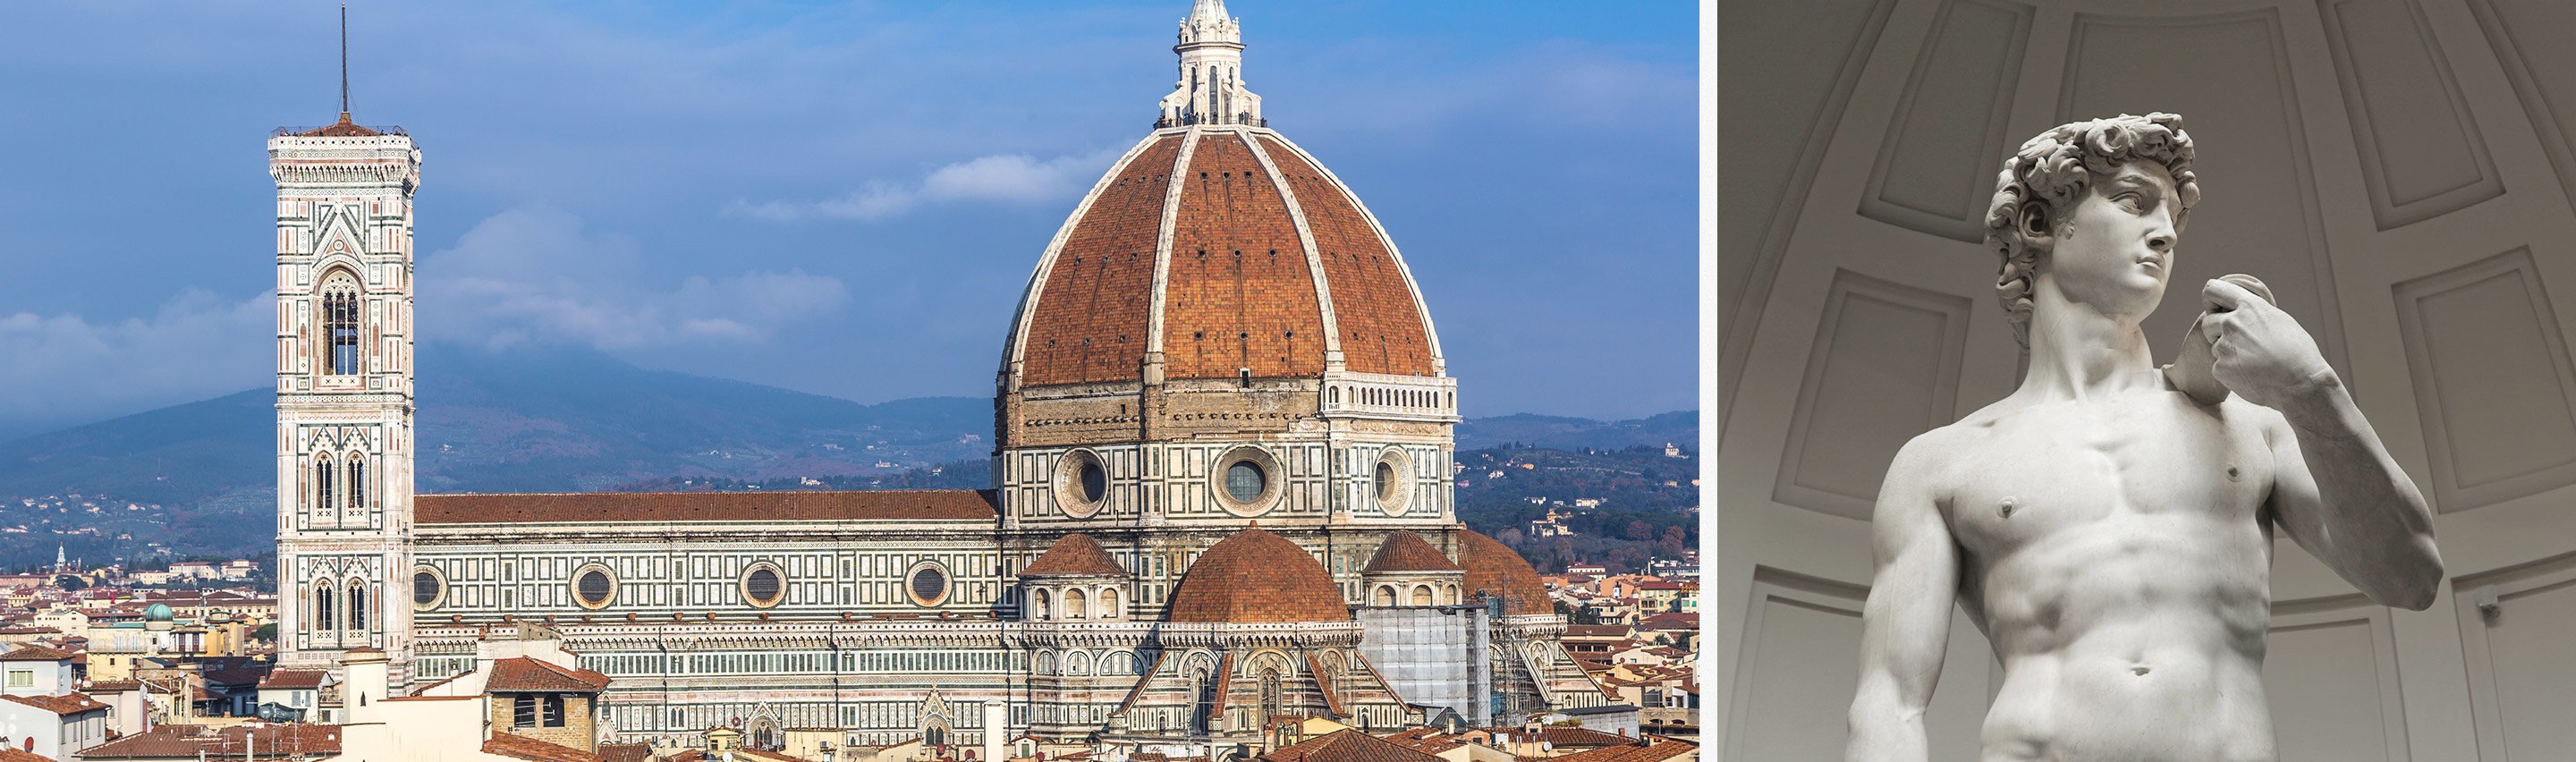 Florence Walking Tour with Duomo, David | Dark Rome Tours